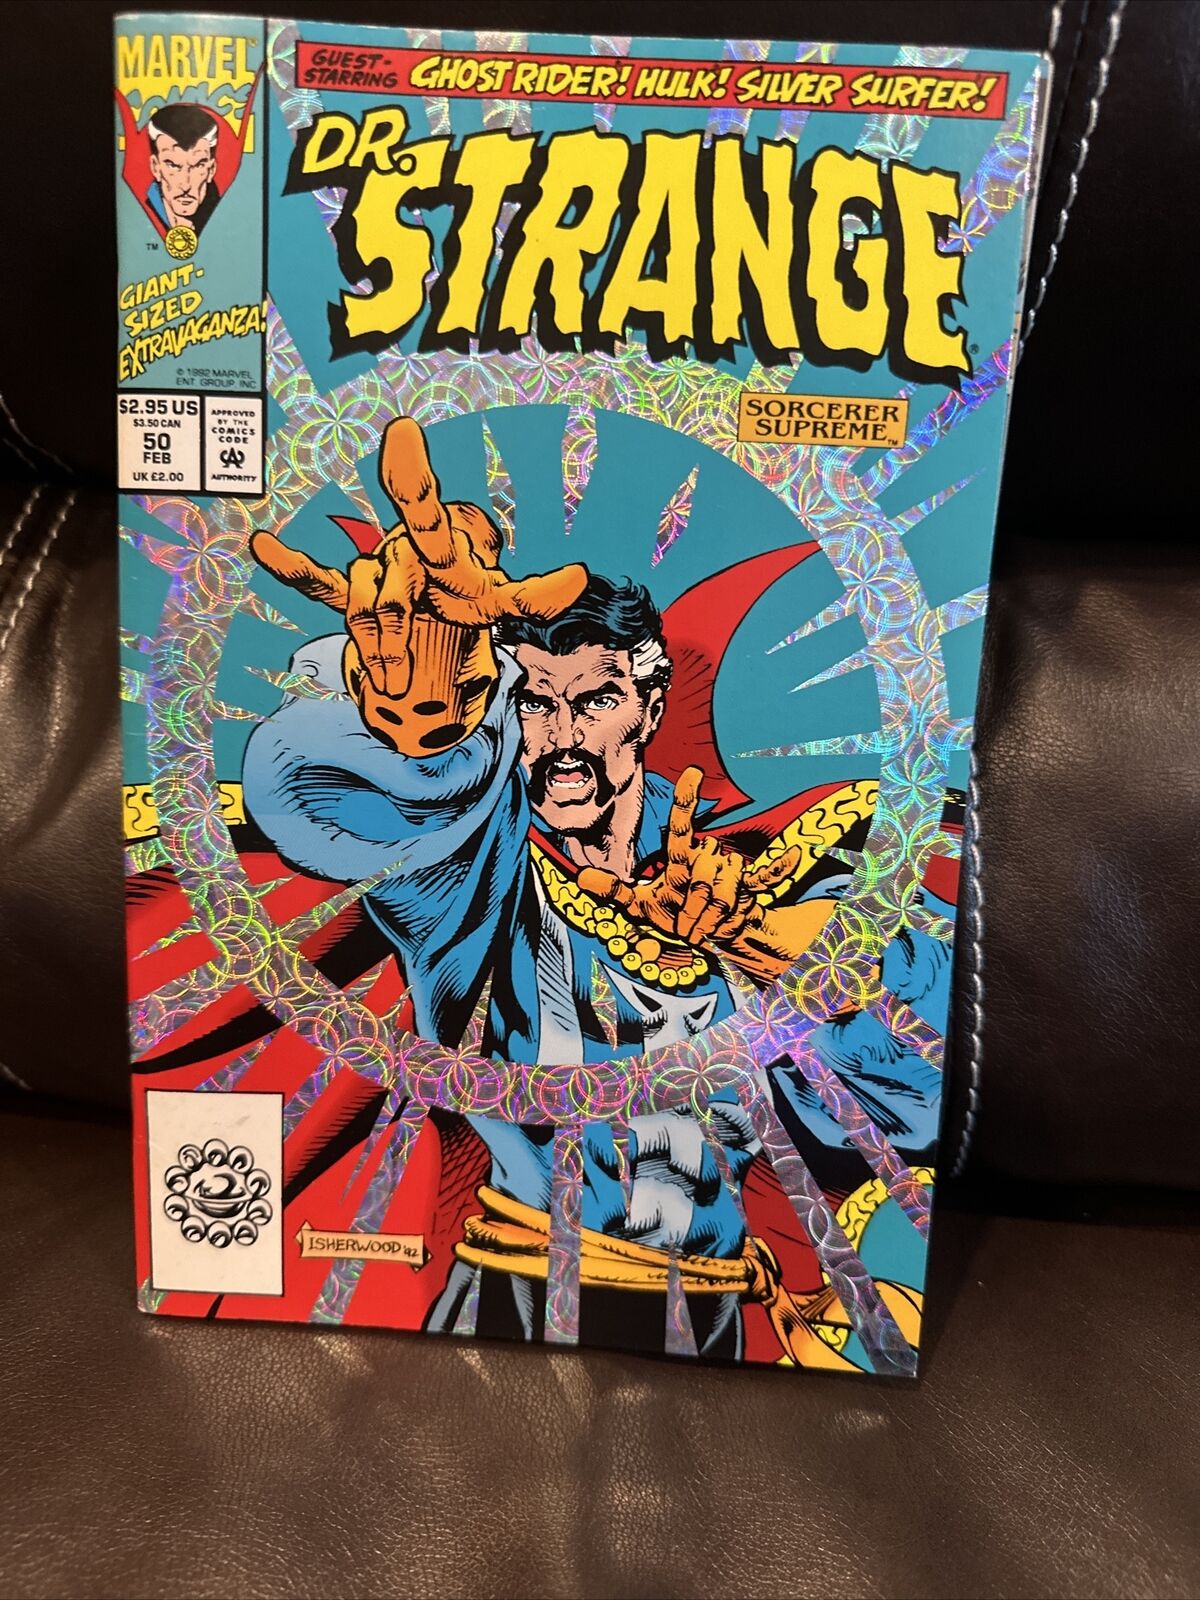 DR. STRANGE: SORCERER SUPREME #50 * Marvel Comics * FEB.1993 Comic Book VF